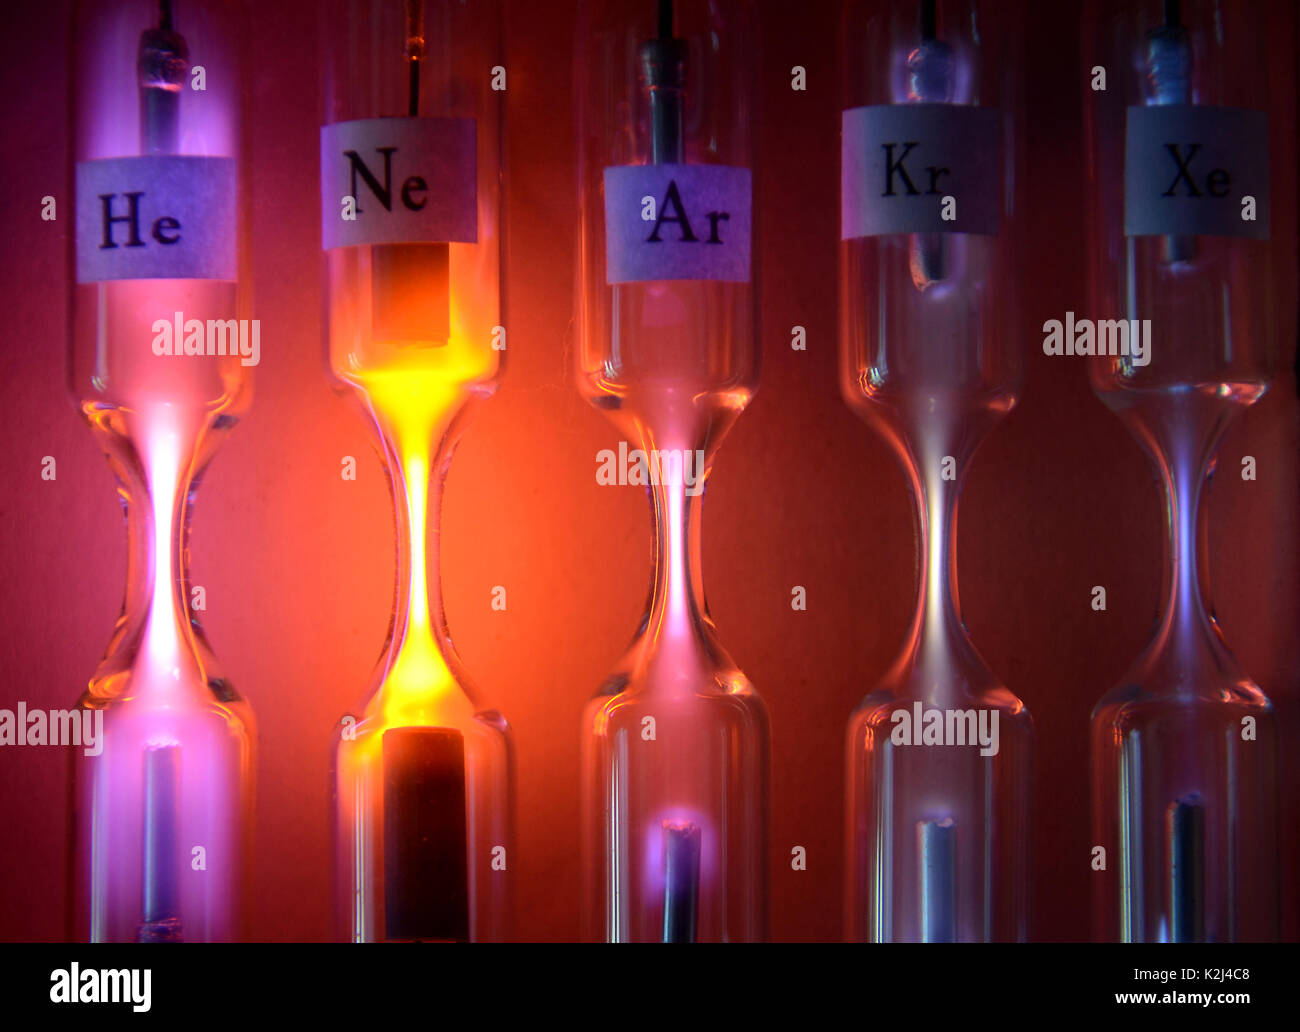 Rohre mit inerten Gasen mit hoher Spannung begeistert. Von links nach rechts: Helium, Neon, Argon, Krypton und Xenon. Jedes Rohr emittiert eine andere Farbe und in Stockfoto